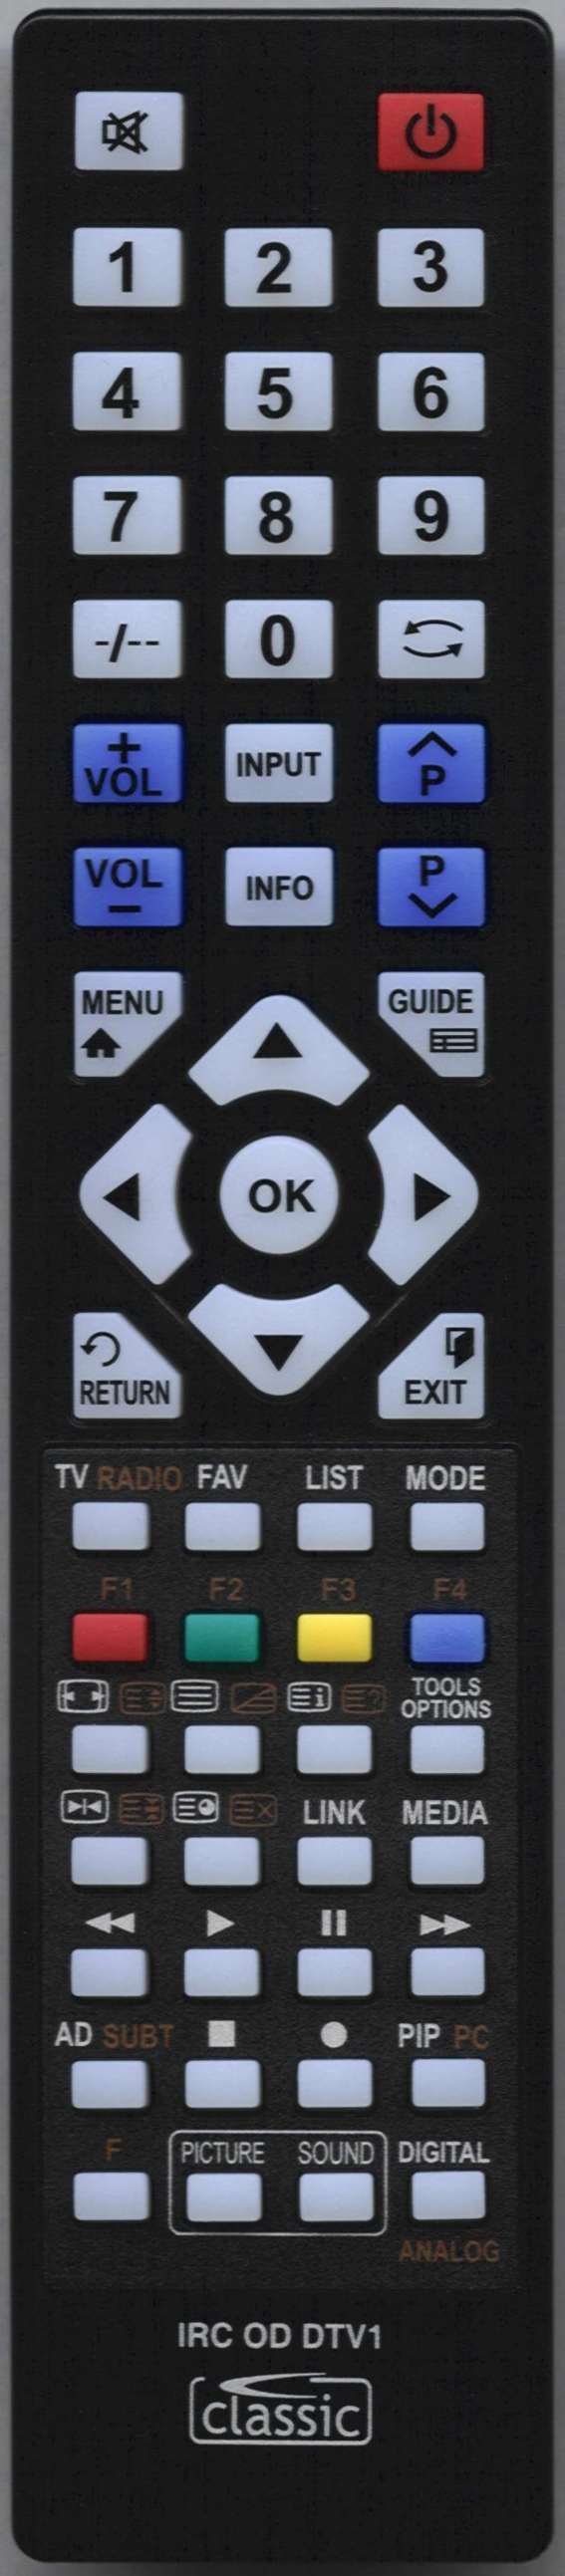 SEIKI SE50FO04UK Remote Control